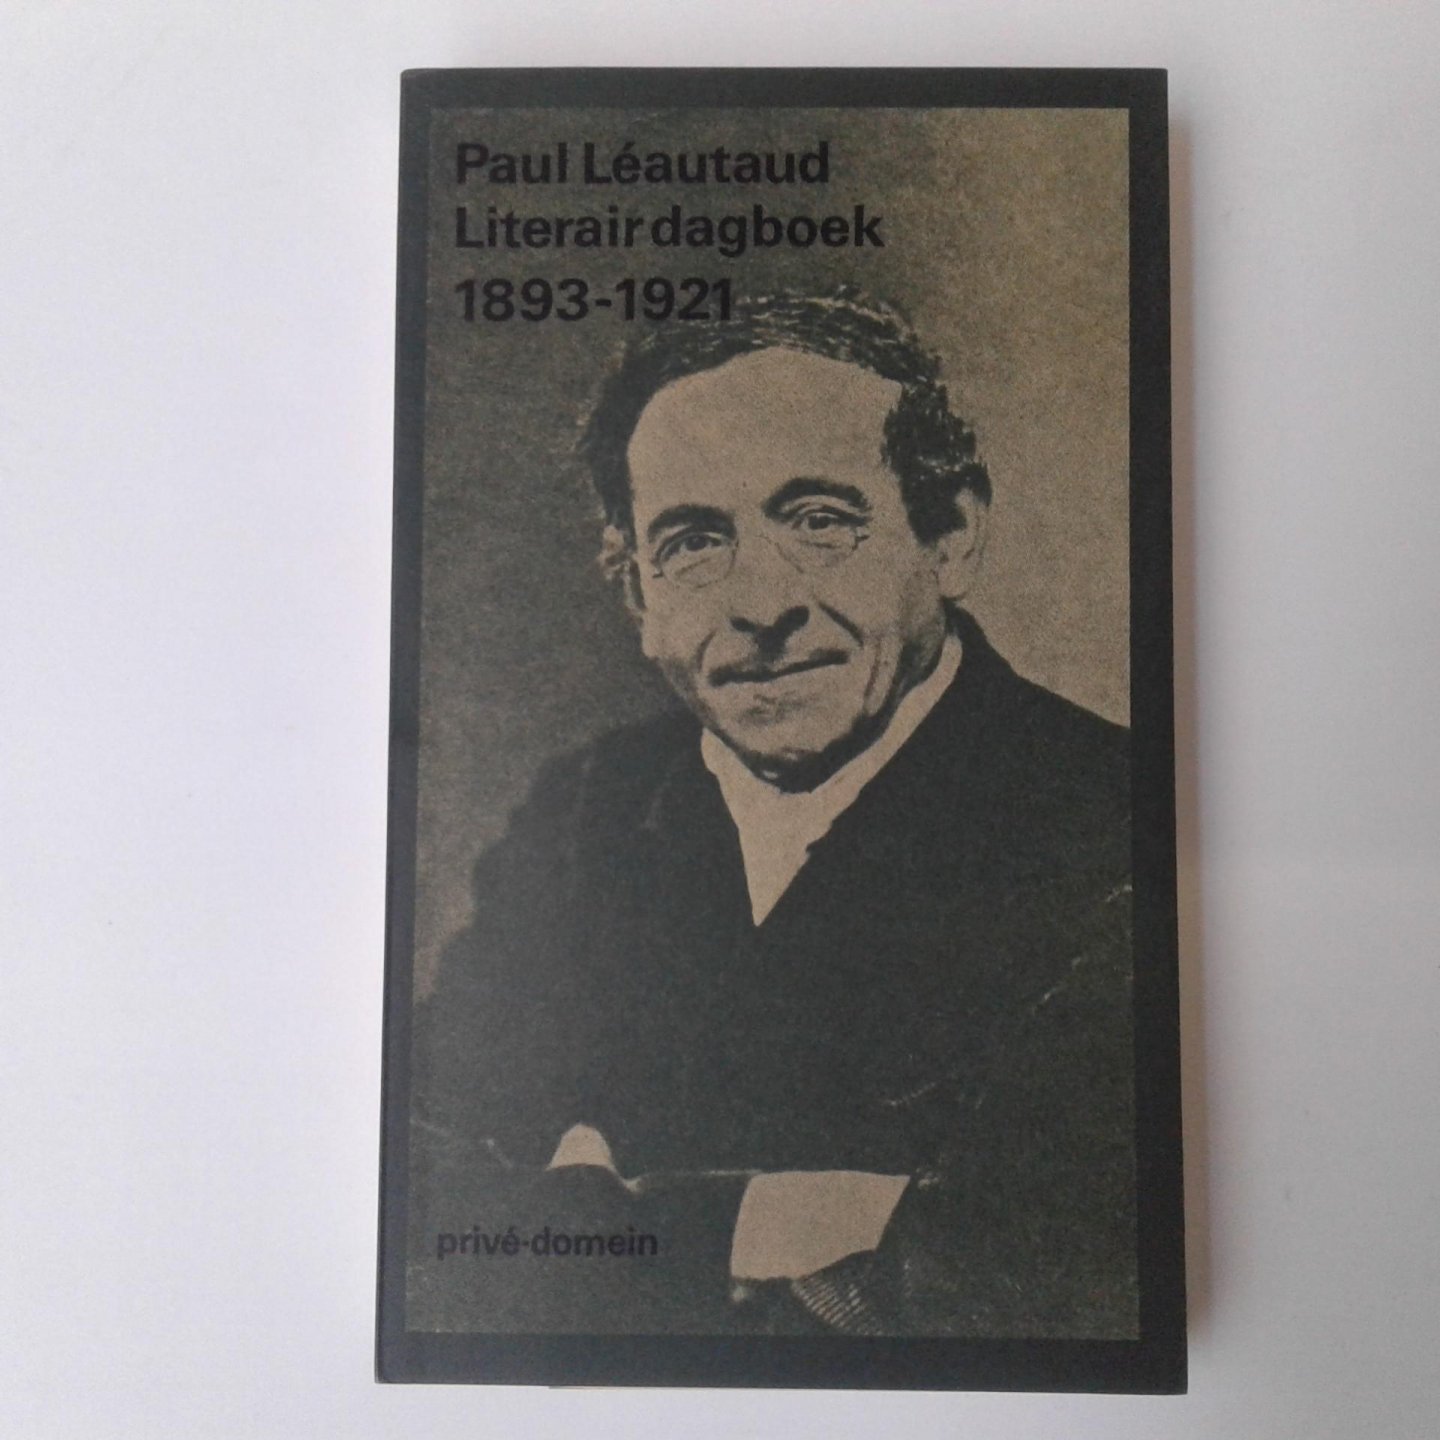 Léautaud, Paul - Léautaud ; Literair dagboek 1893-1921